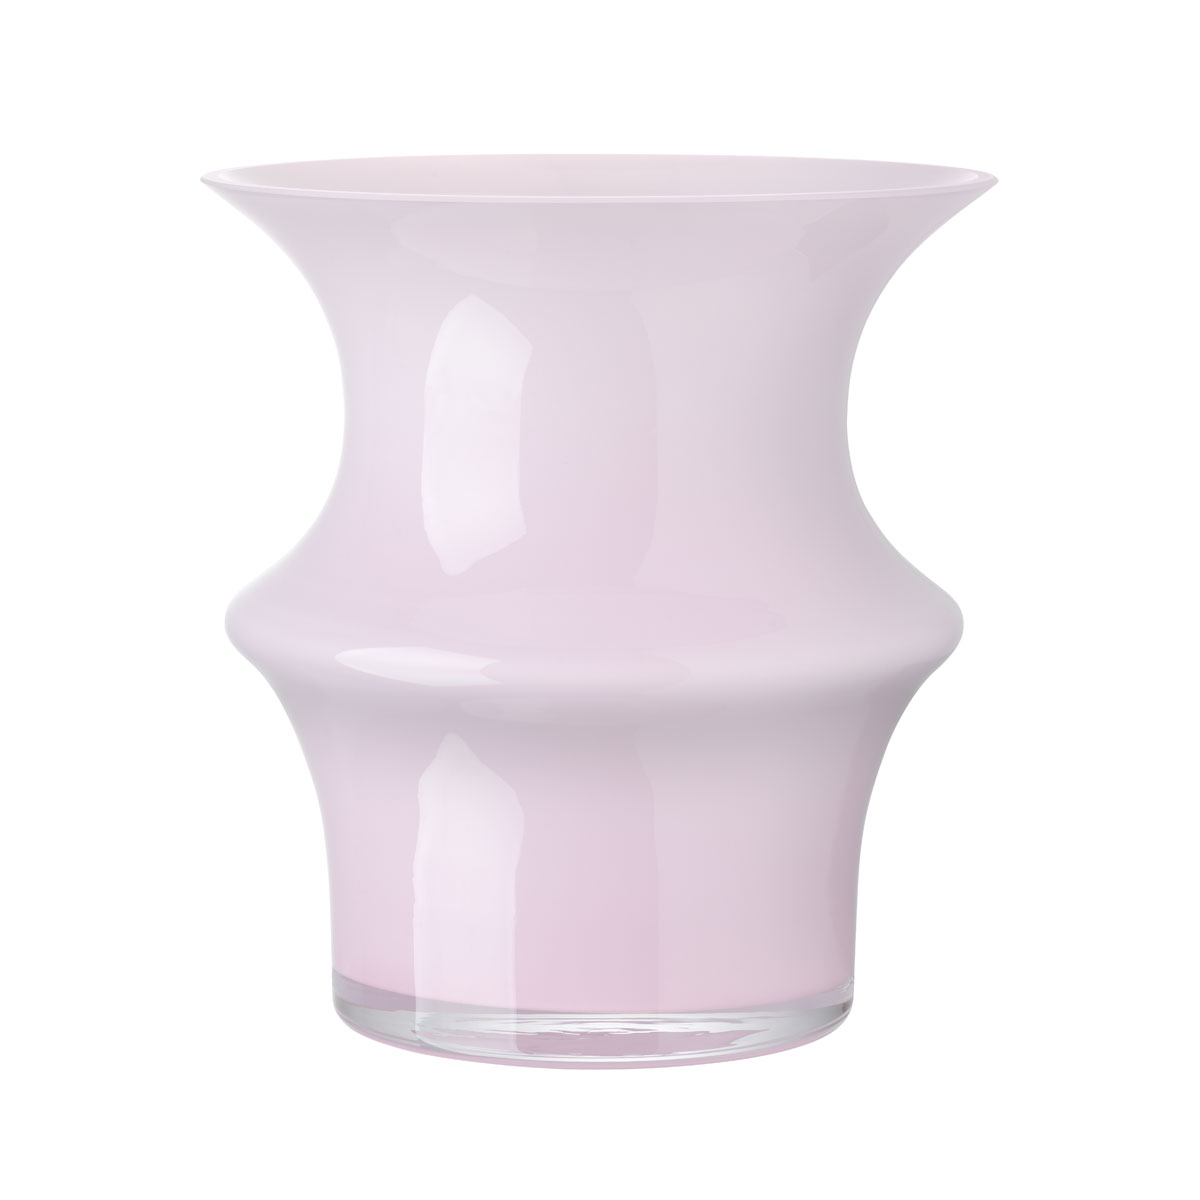 Kosta Boda Pagod 6 5/8" Vase, Pink